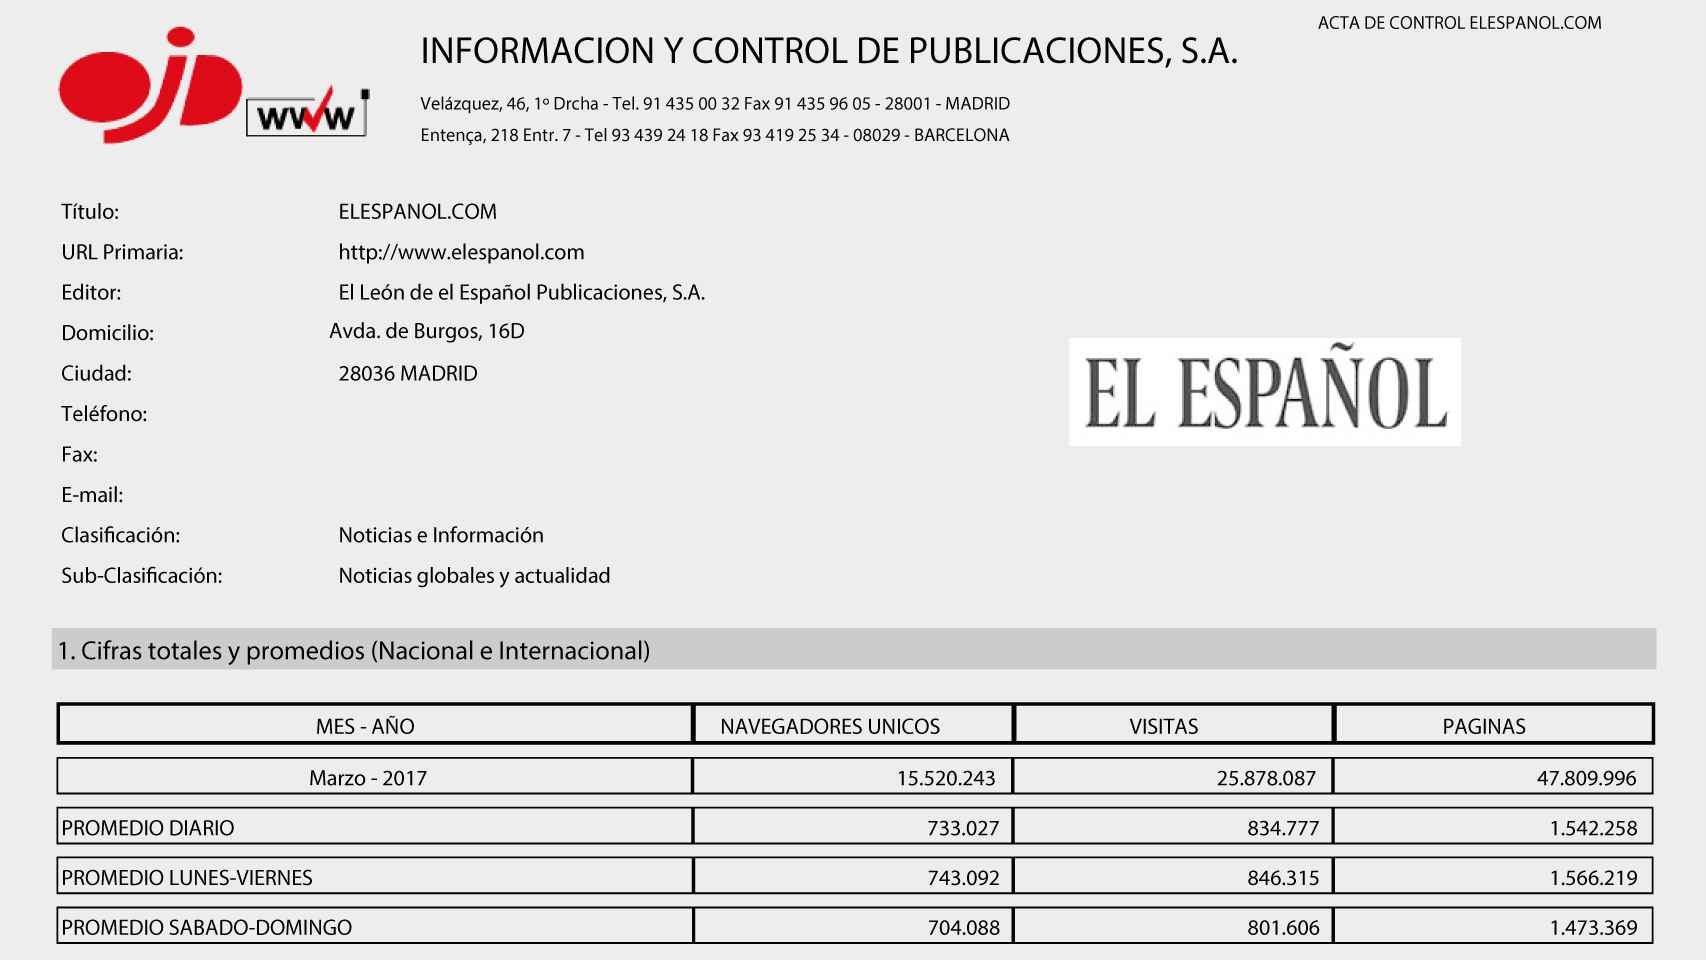 Documento de la OJD que certifica que EL ESPAÑOL tuvo 13,4 millones de lectores en marzo.